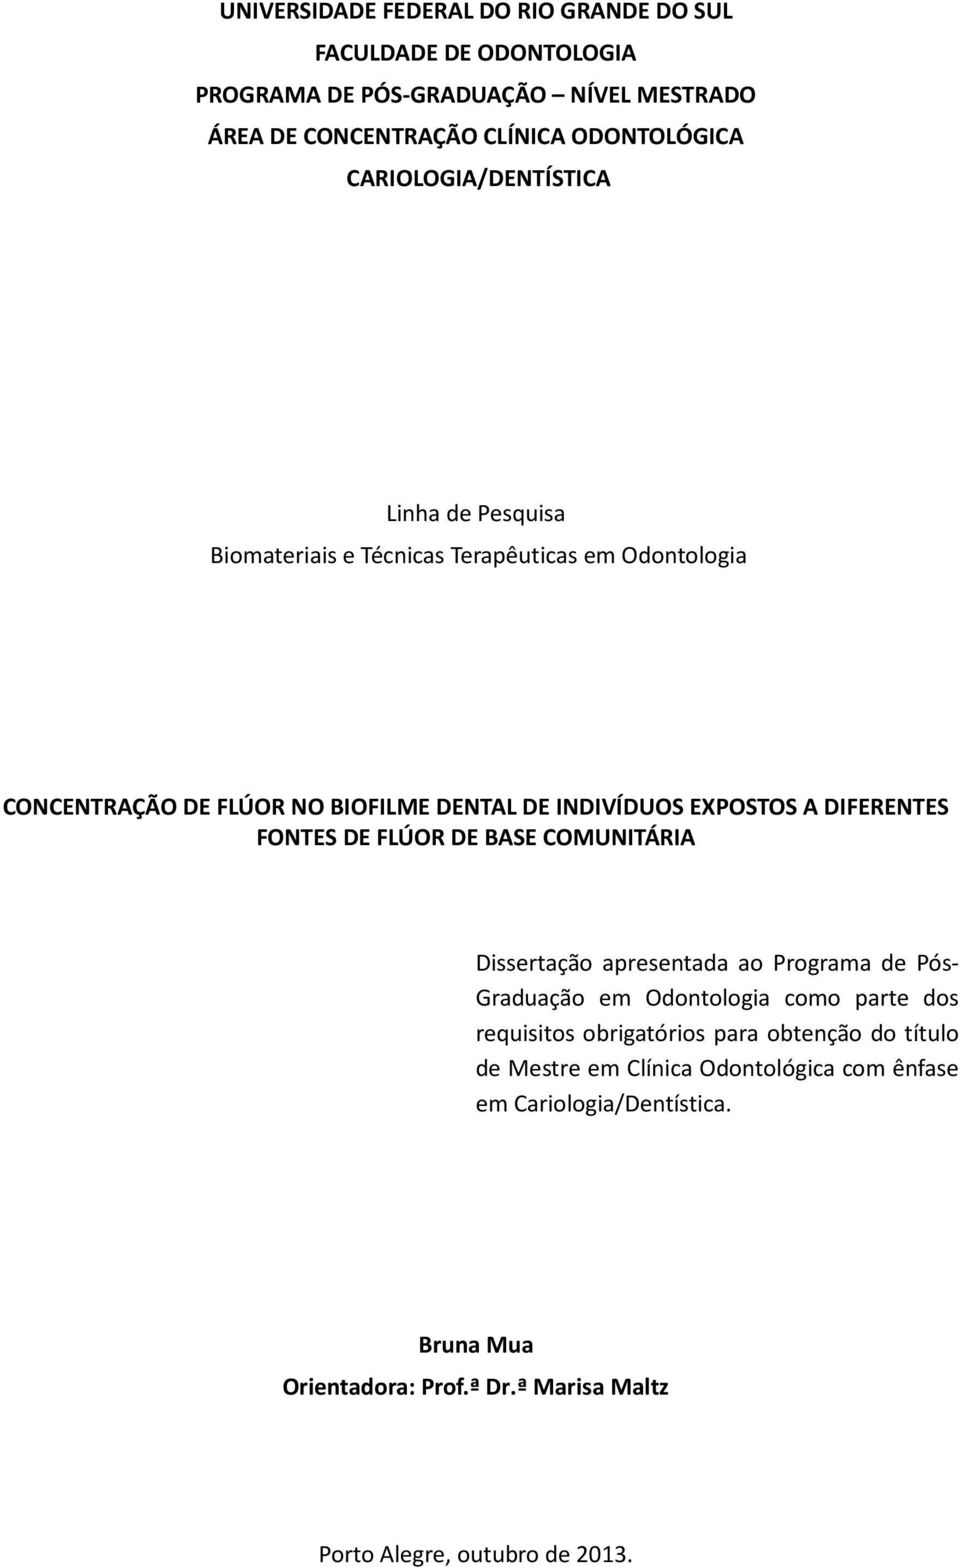 DIFERENTES FONTES DE FLÚOR DE BASE COMUNITÁRIA Dissertação apresentada ao Programa de Pós- Graduação em Odontologia como parte dos requisitos obrigatórios para